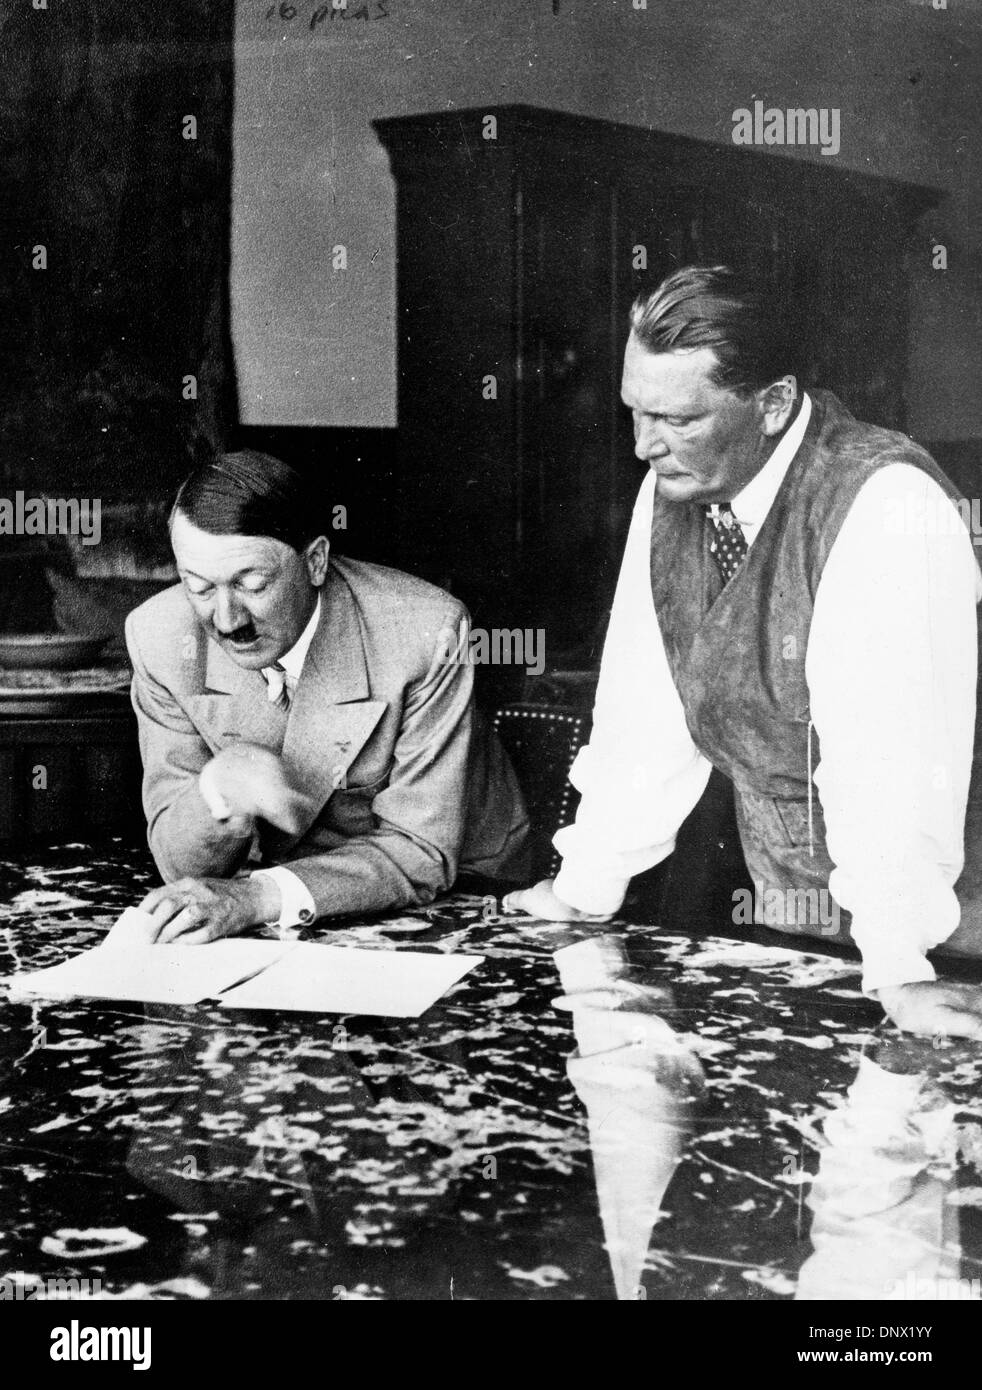 15 juin 1937 - Berlin, Allemagne - Adolf Hitler et Hermann Goering, fondateur de la Gestapo. Adolf Hitler (20 avril 1889 ÐApril 30, 1945) a été le Führer und Reichskanzler (chancelier) et leader de l'Allemagne de 1933 à sa mort. Il était chef du parti national-socialiste des travailleurs allemands (NSDAP), mieux connu sous le nom de Parti nazi. Au sommet de son pouvoir, les armées de Na Banque D'Images